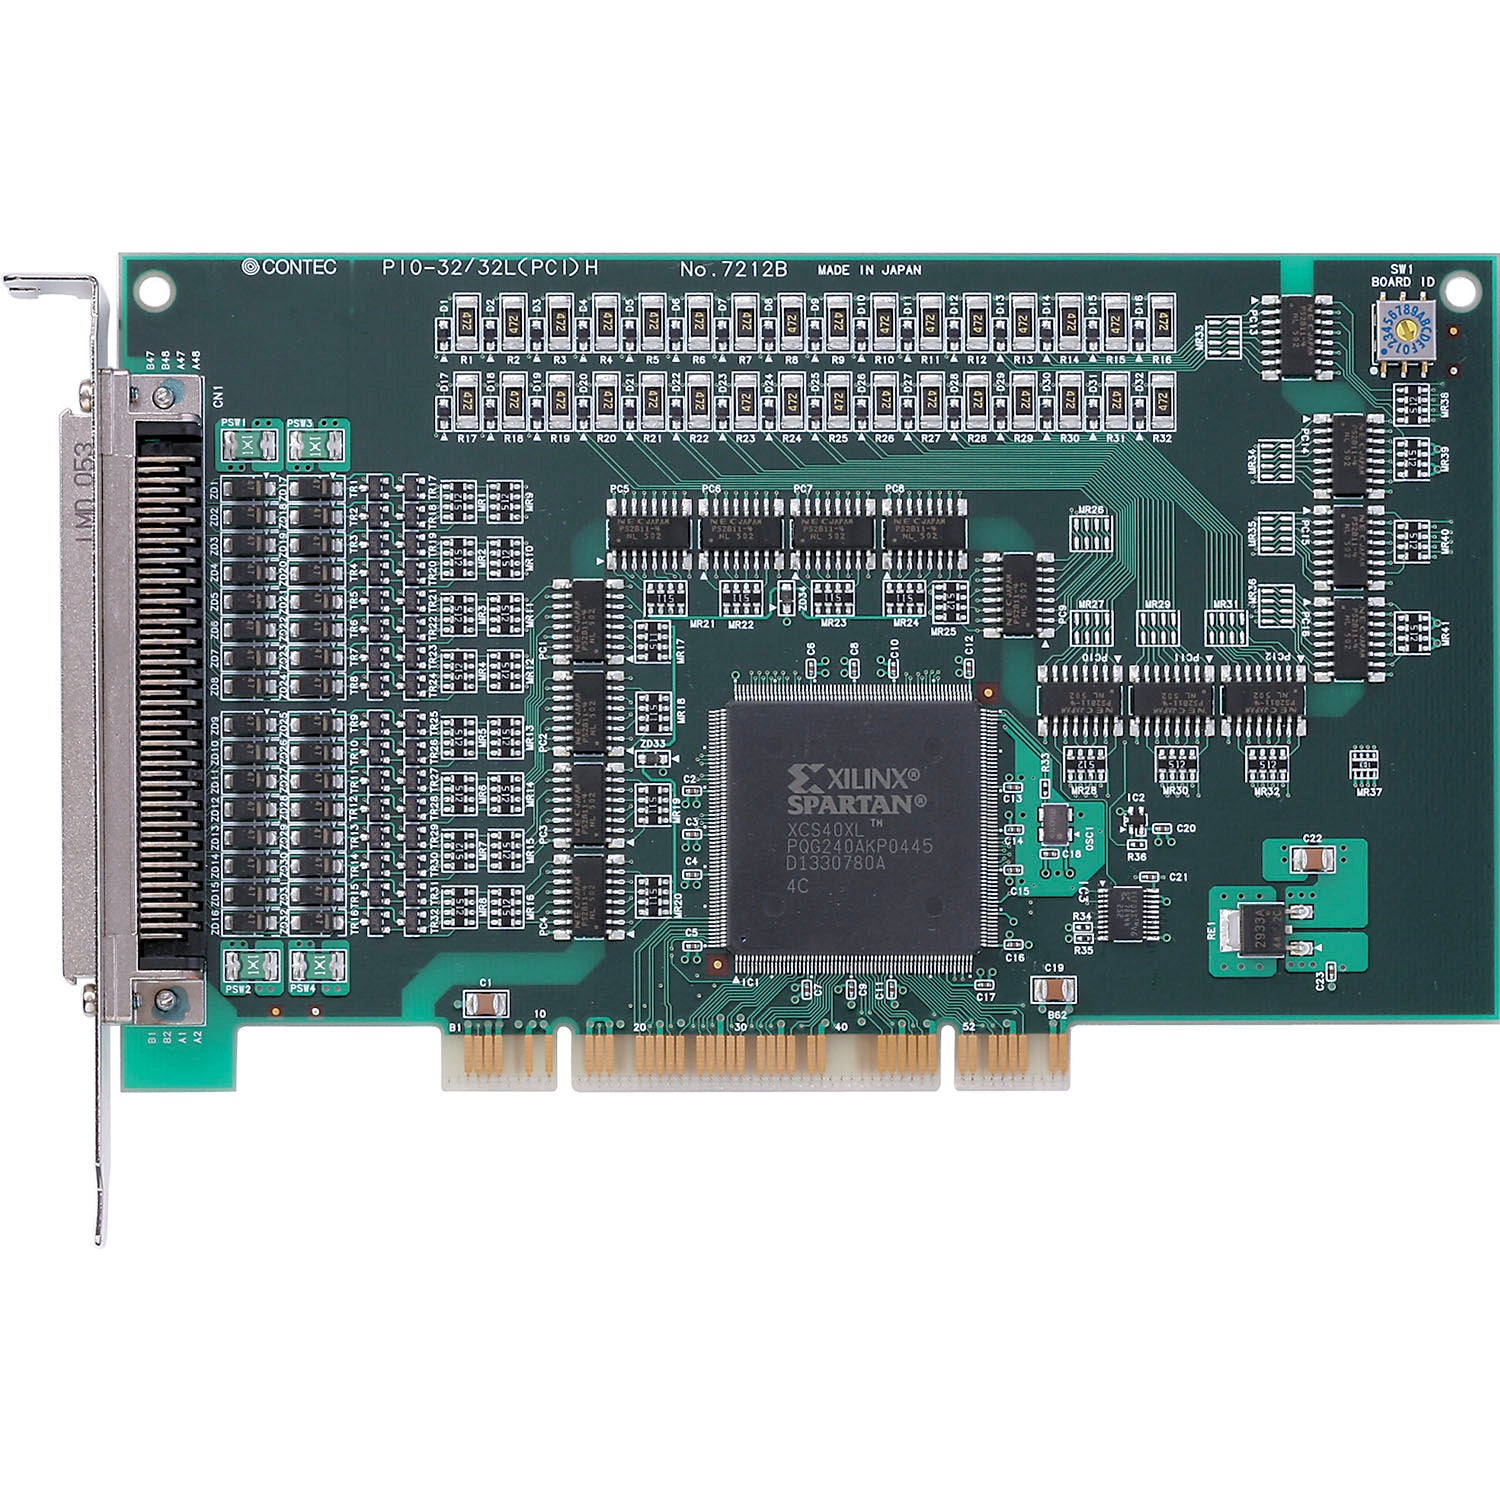 PIO-32/32L(PCI)H Digital I/O PCI card